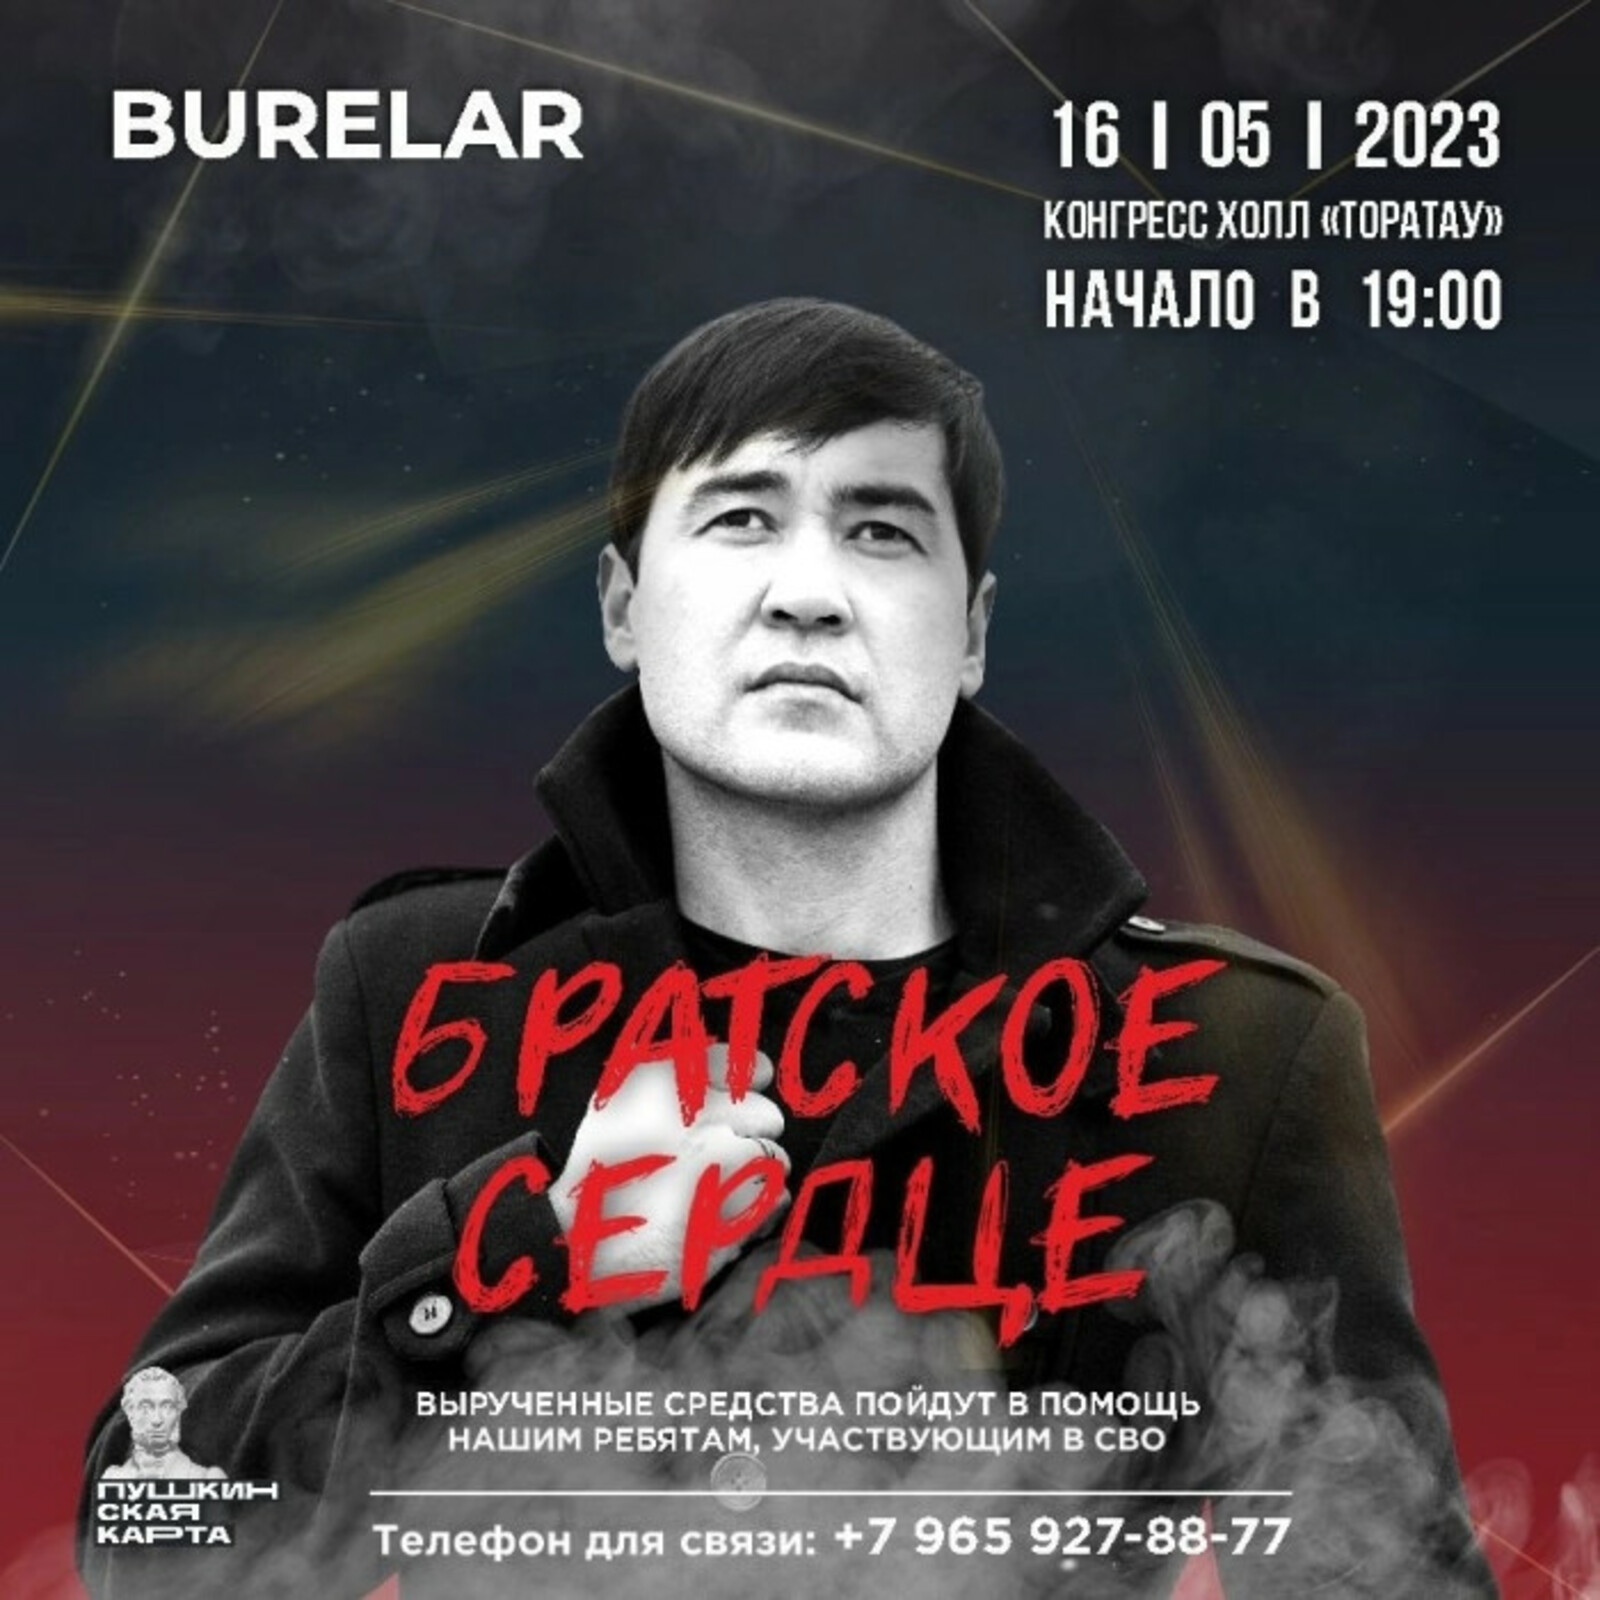 16 мая группа Burelar устроит благотворительный концерт в поддержку участников СВО из Башкирии